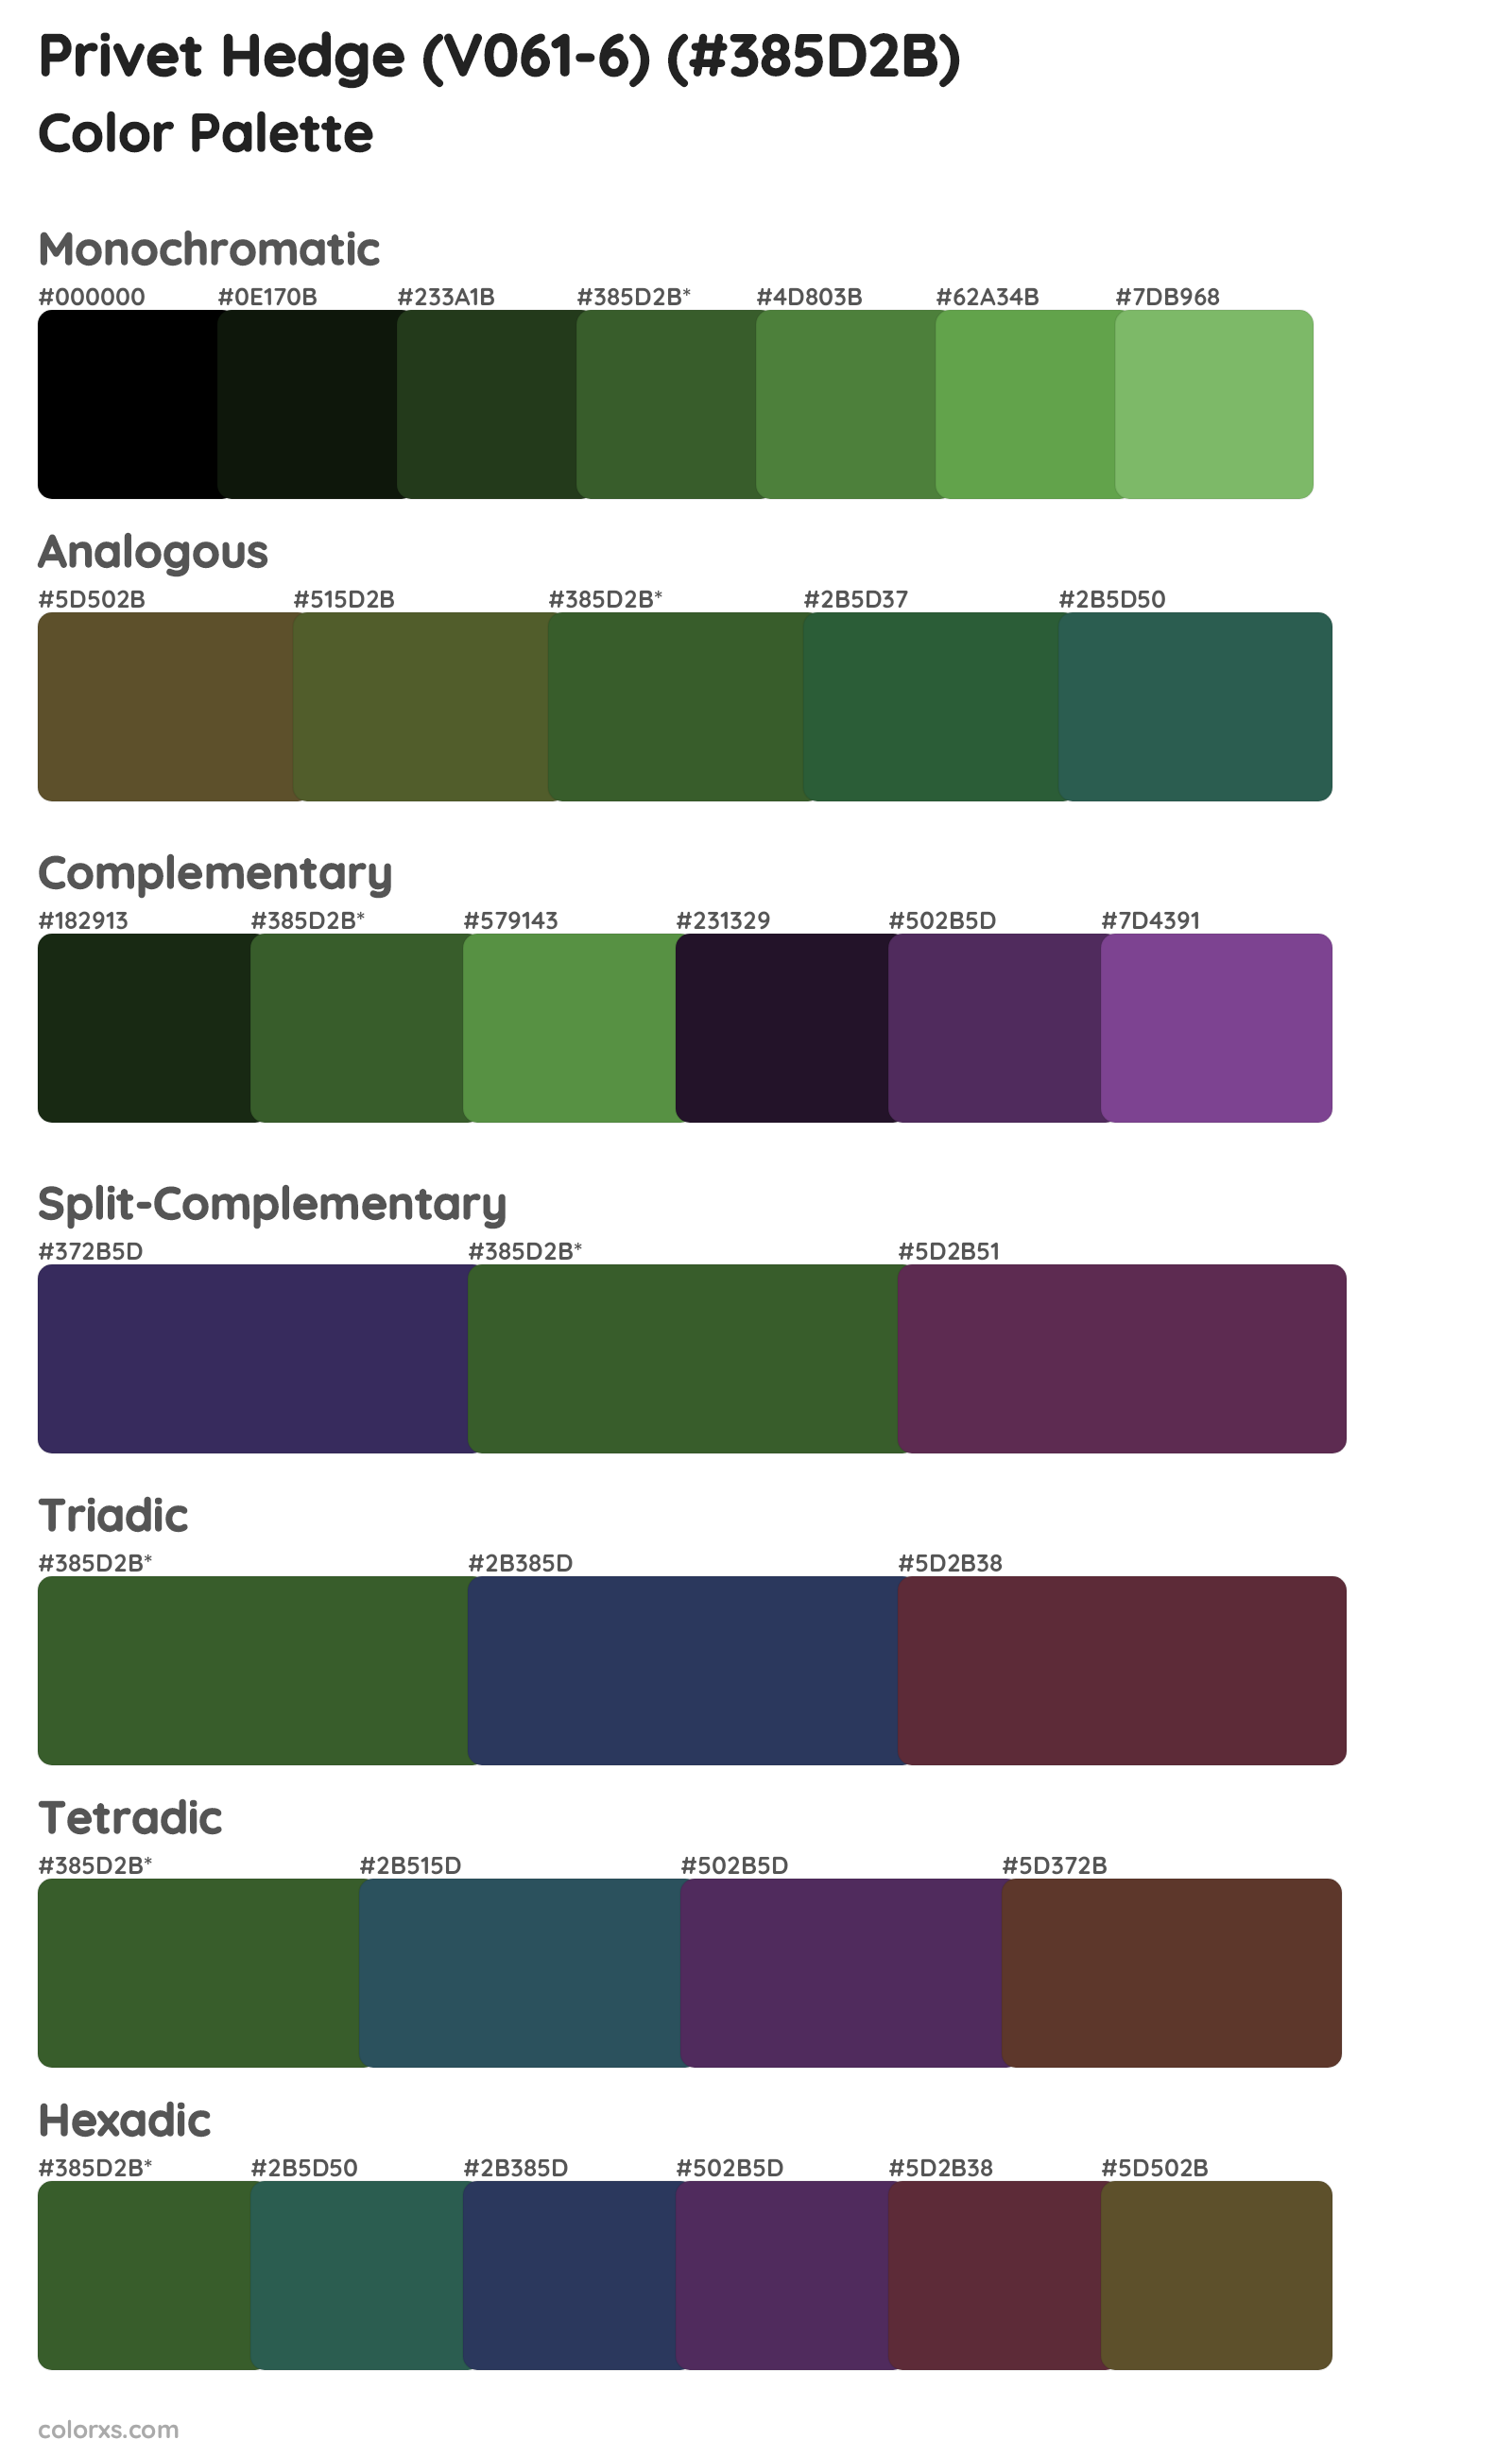 Privet Hedge (V061-6) Color Scheme Palettes